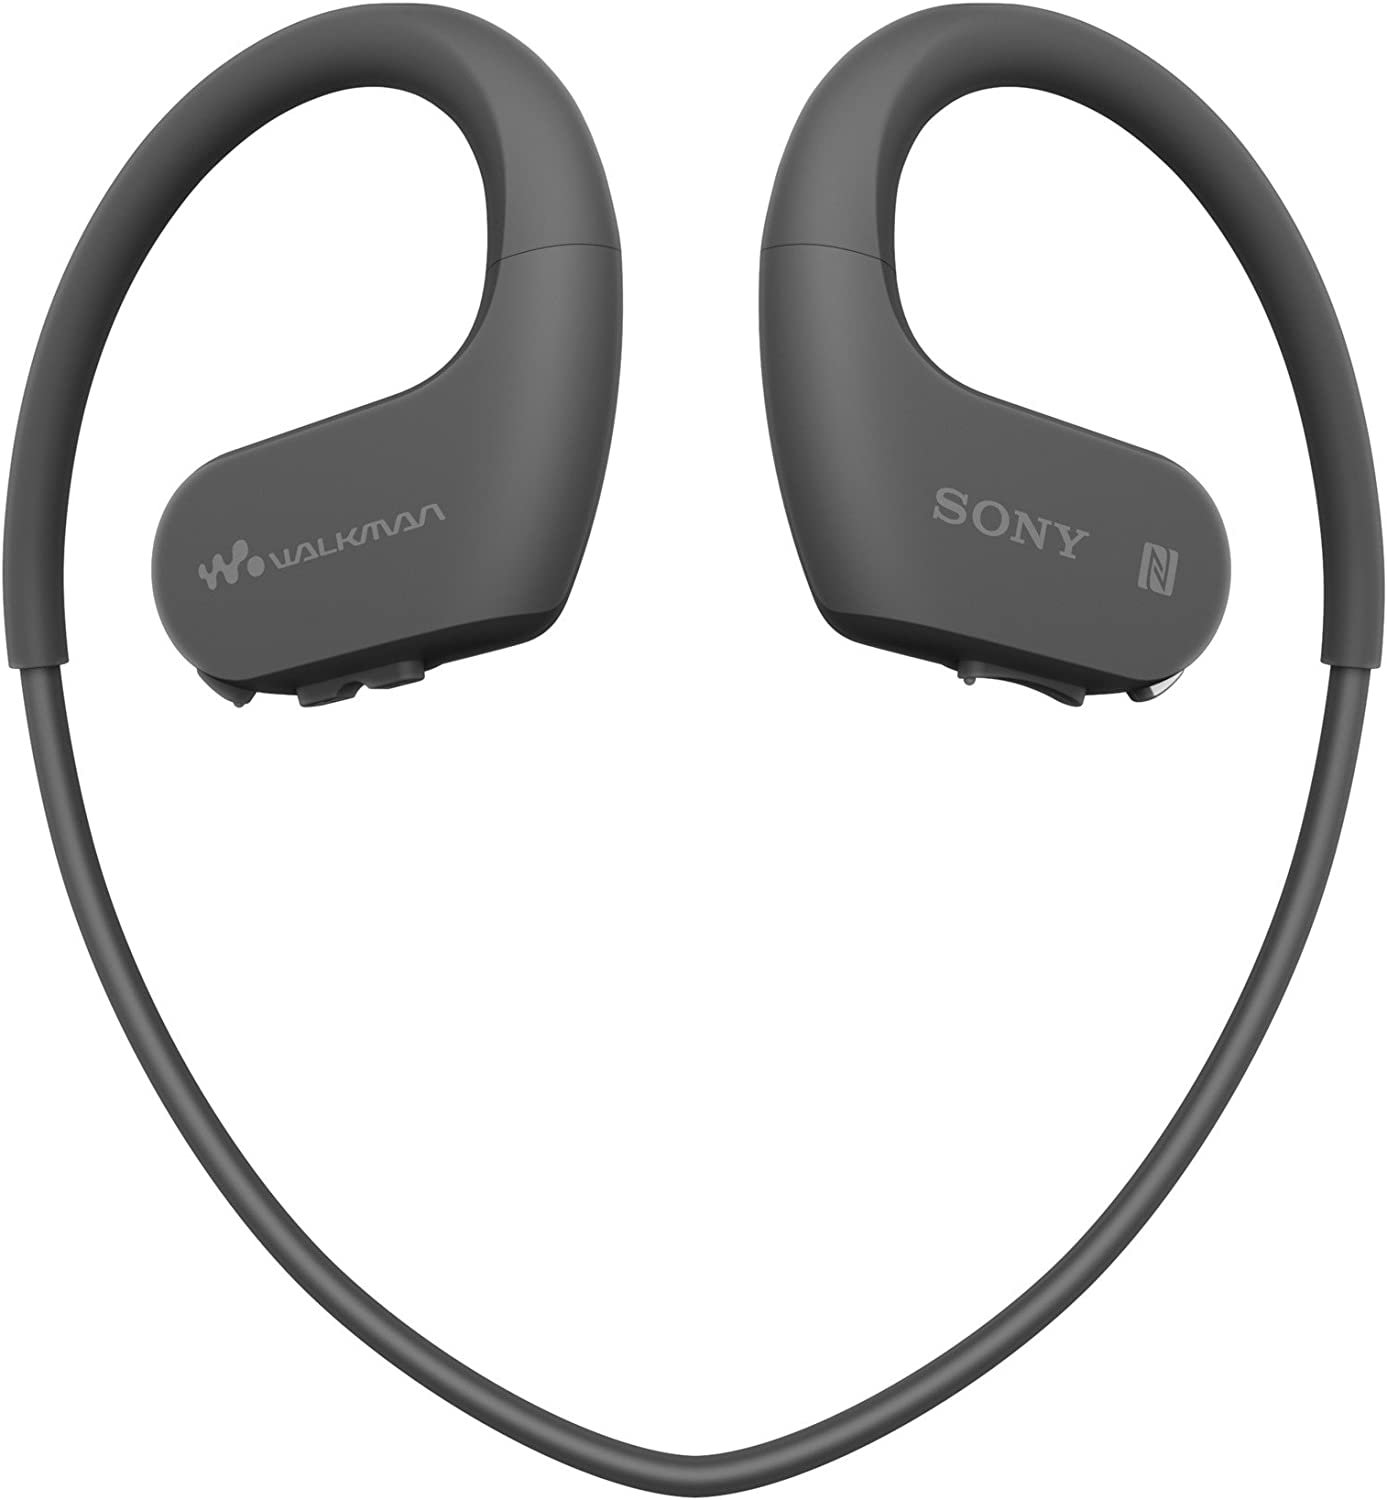 Sony NW-WS623 Sport walkman เครื่องเล่น MP3 ป้องกันน้ำได้